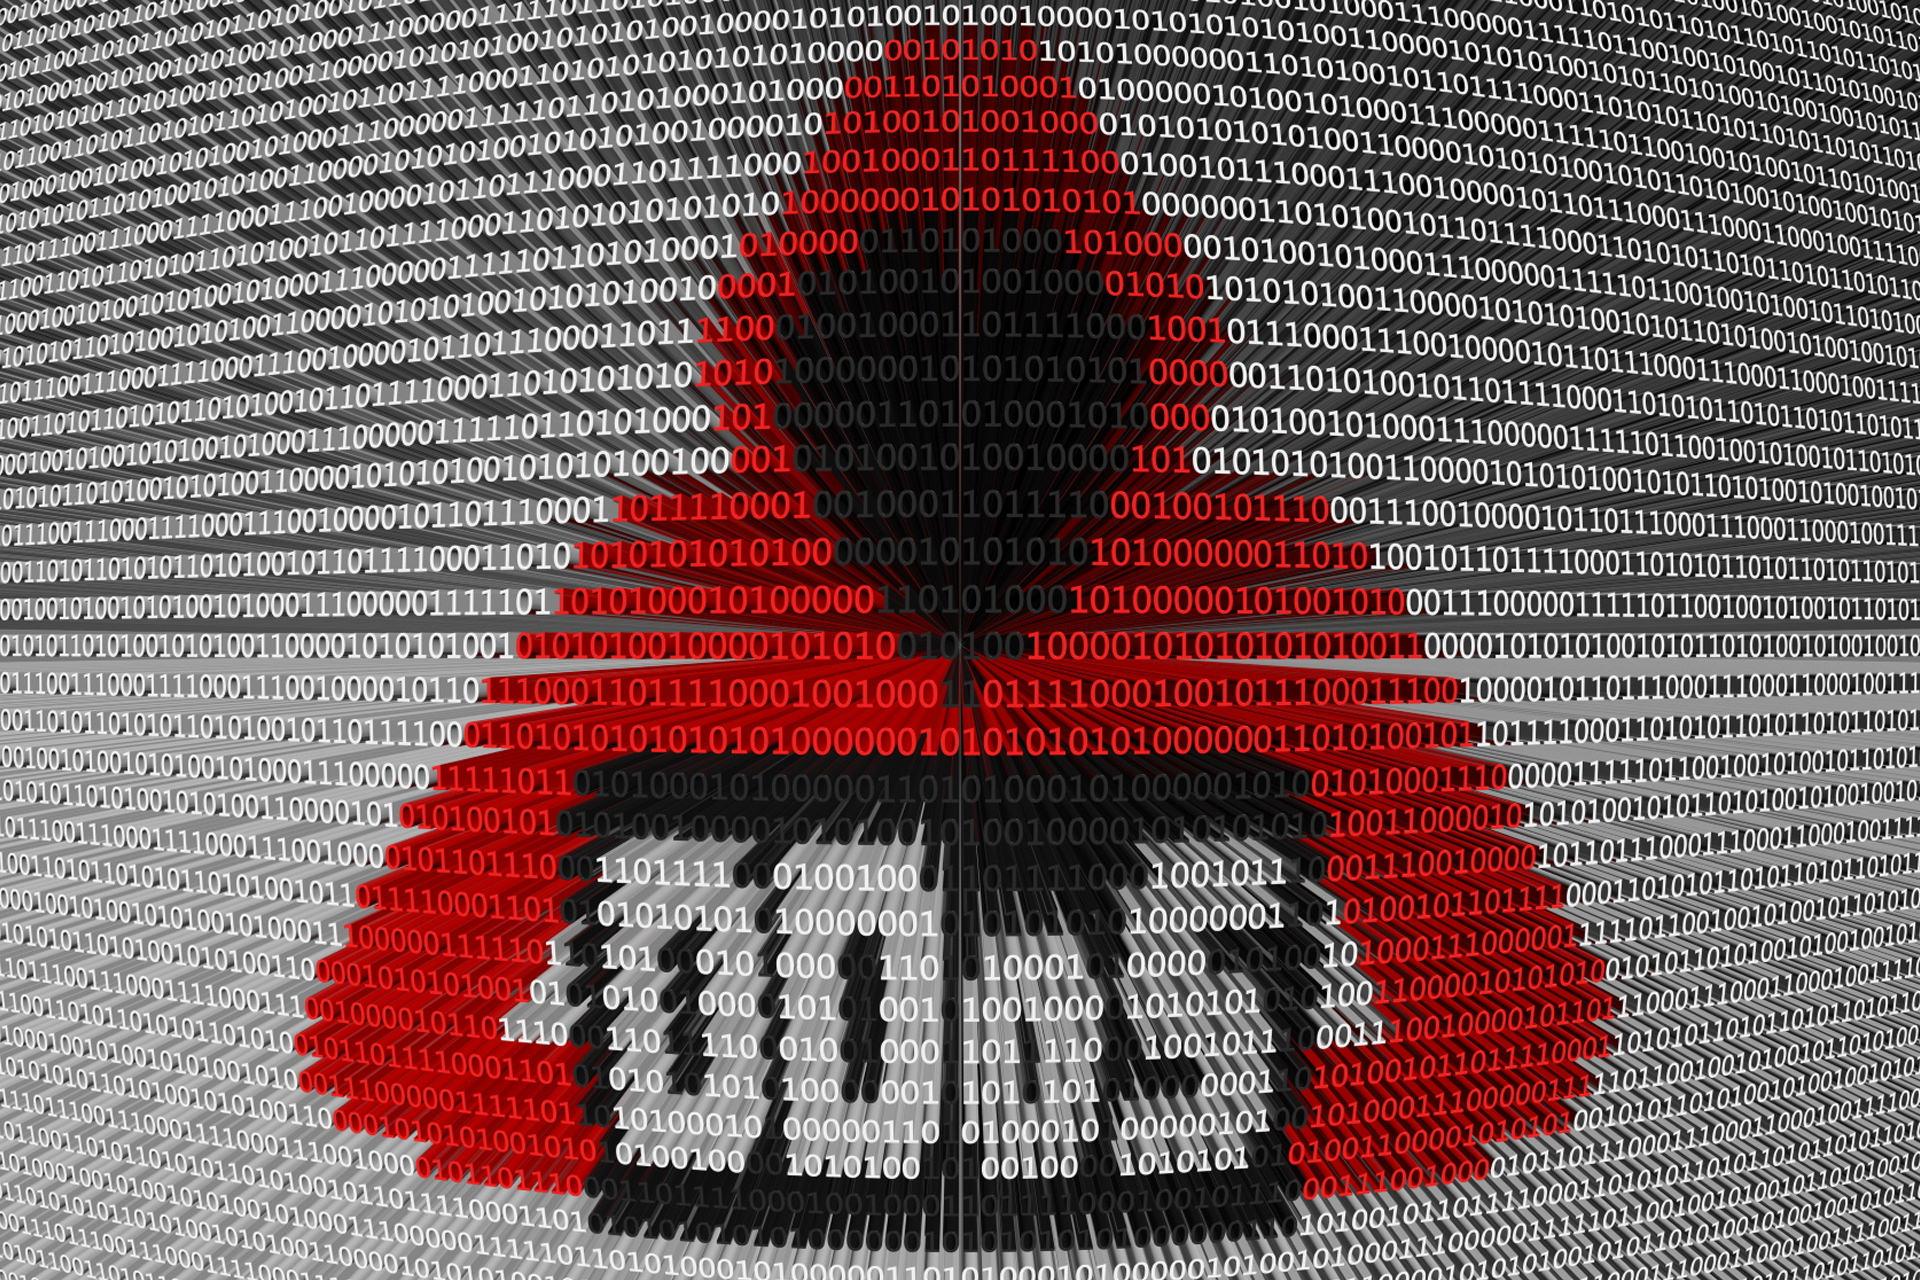 DoS در مقابل DDoS؛ تفاوت این دو نوع حمله‌ی سایبری در چیست؟